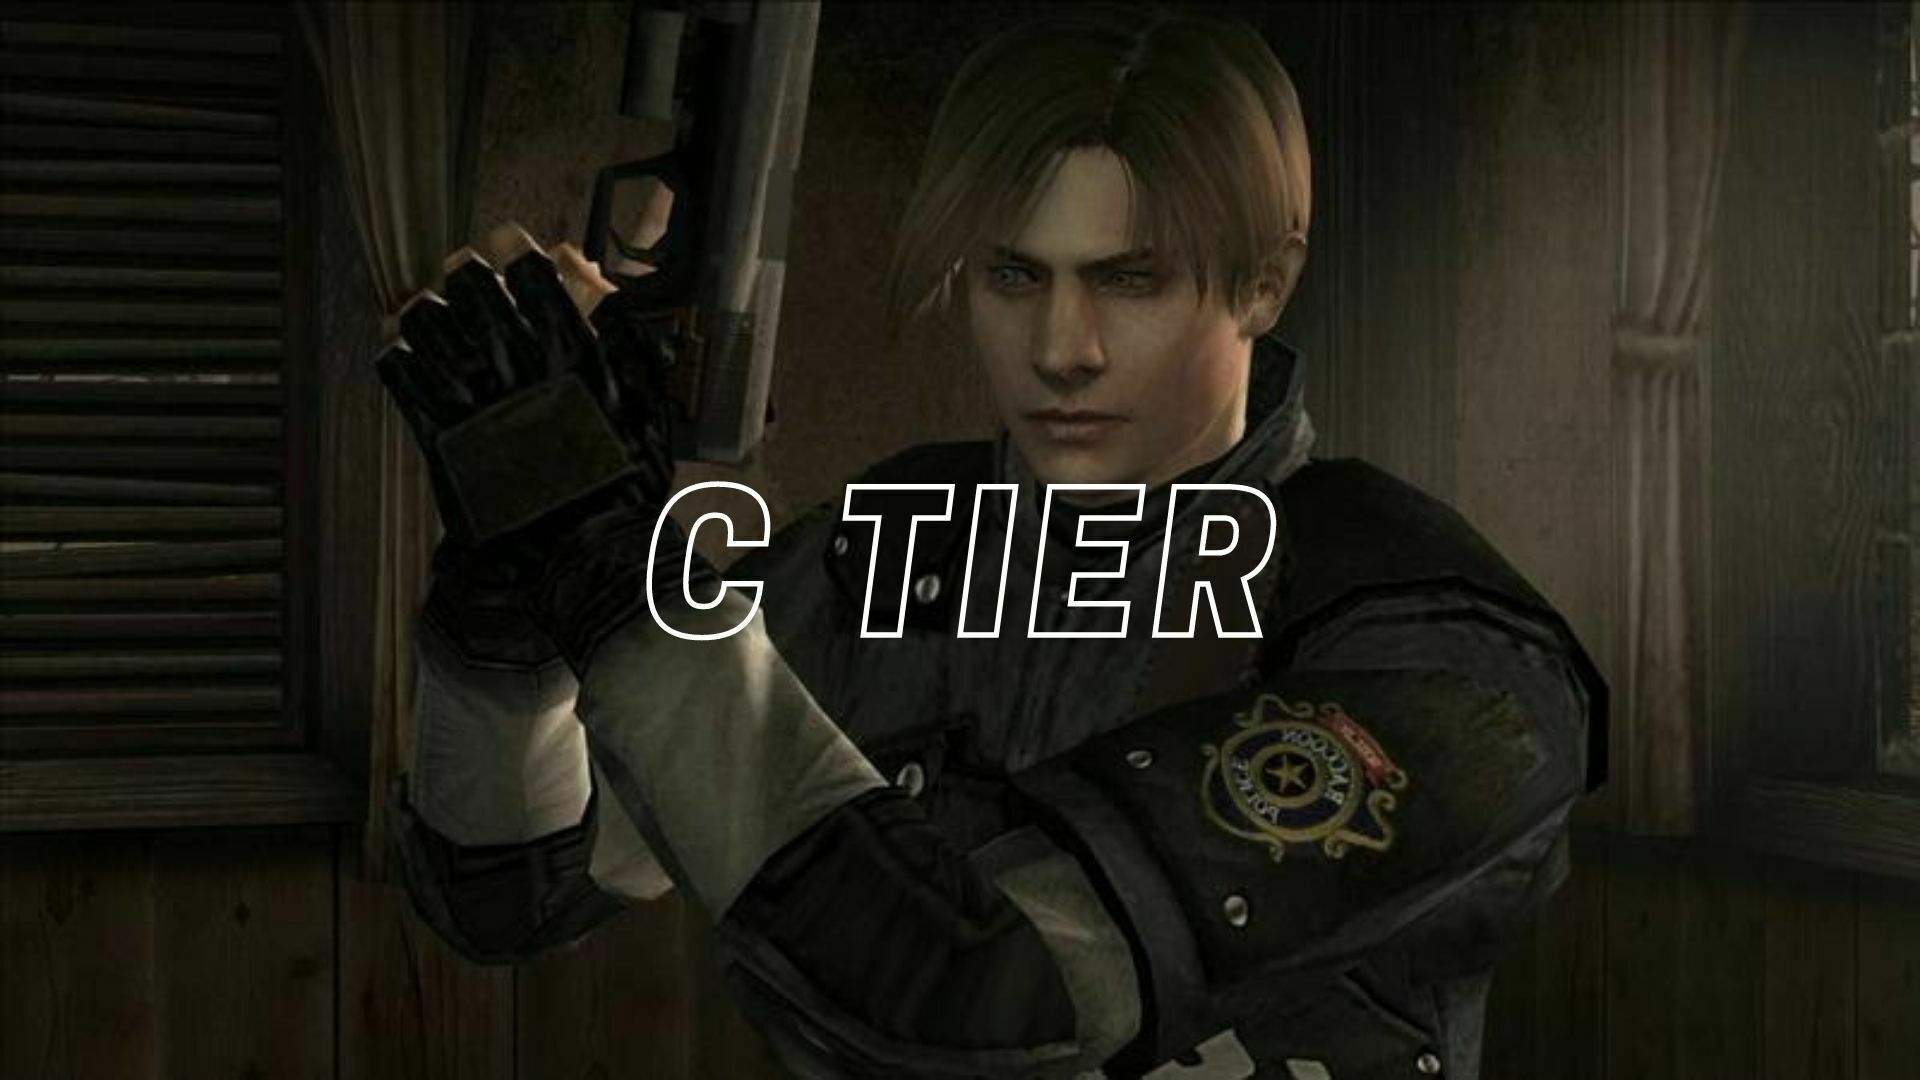 Resident Evil Tier List